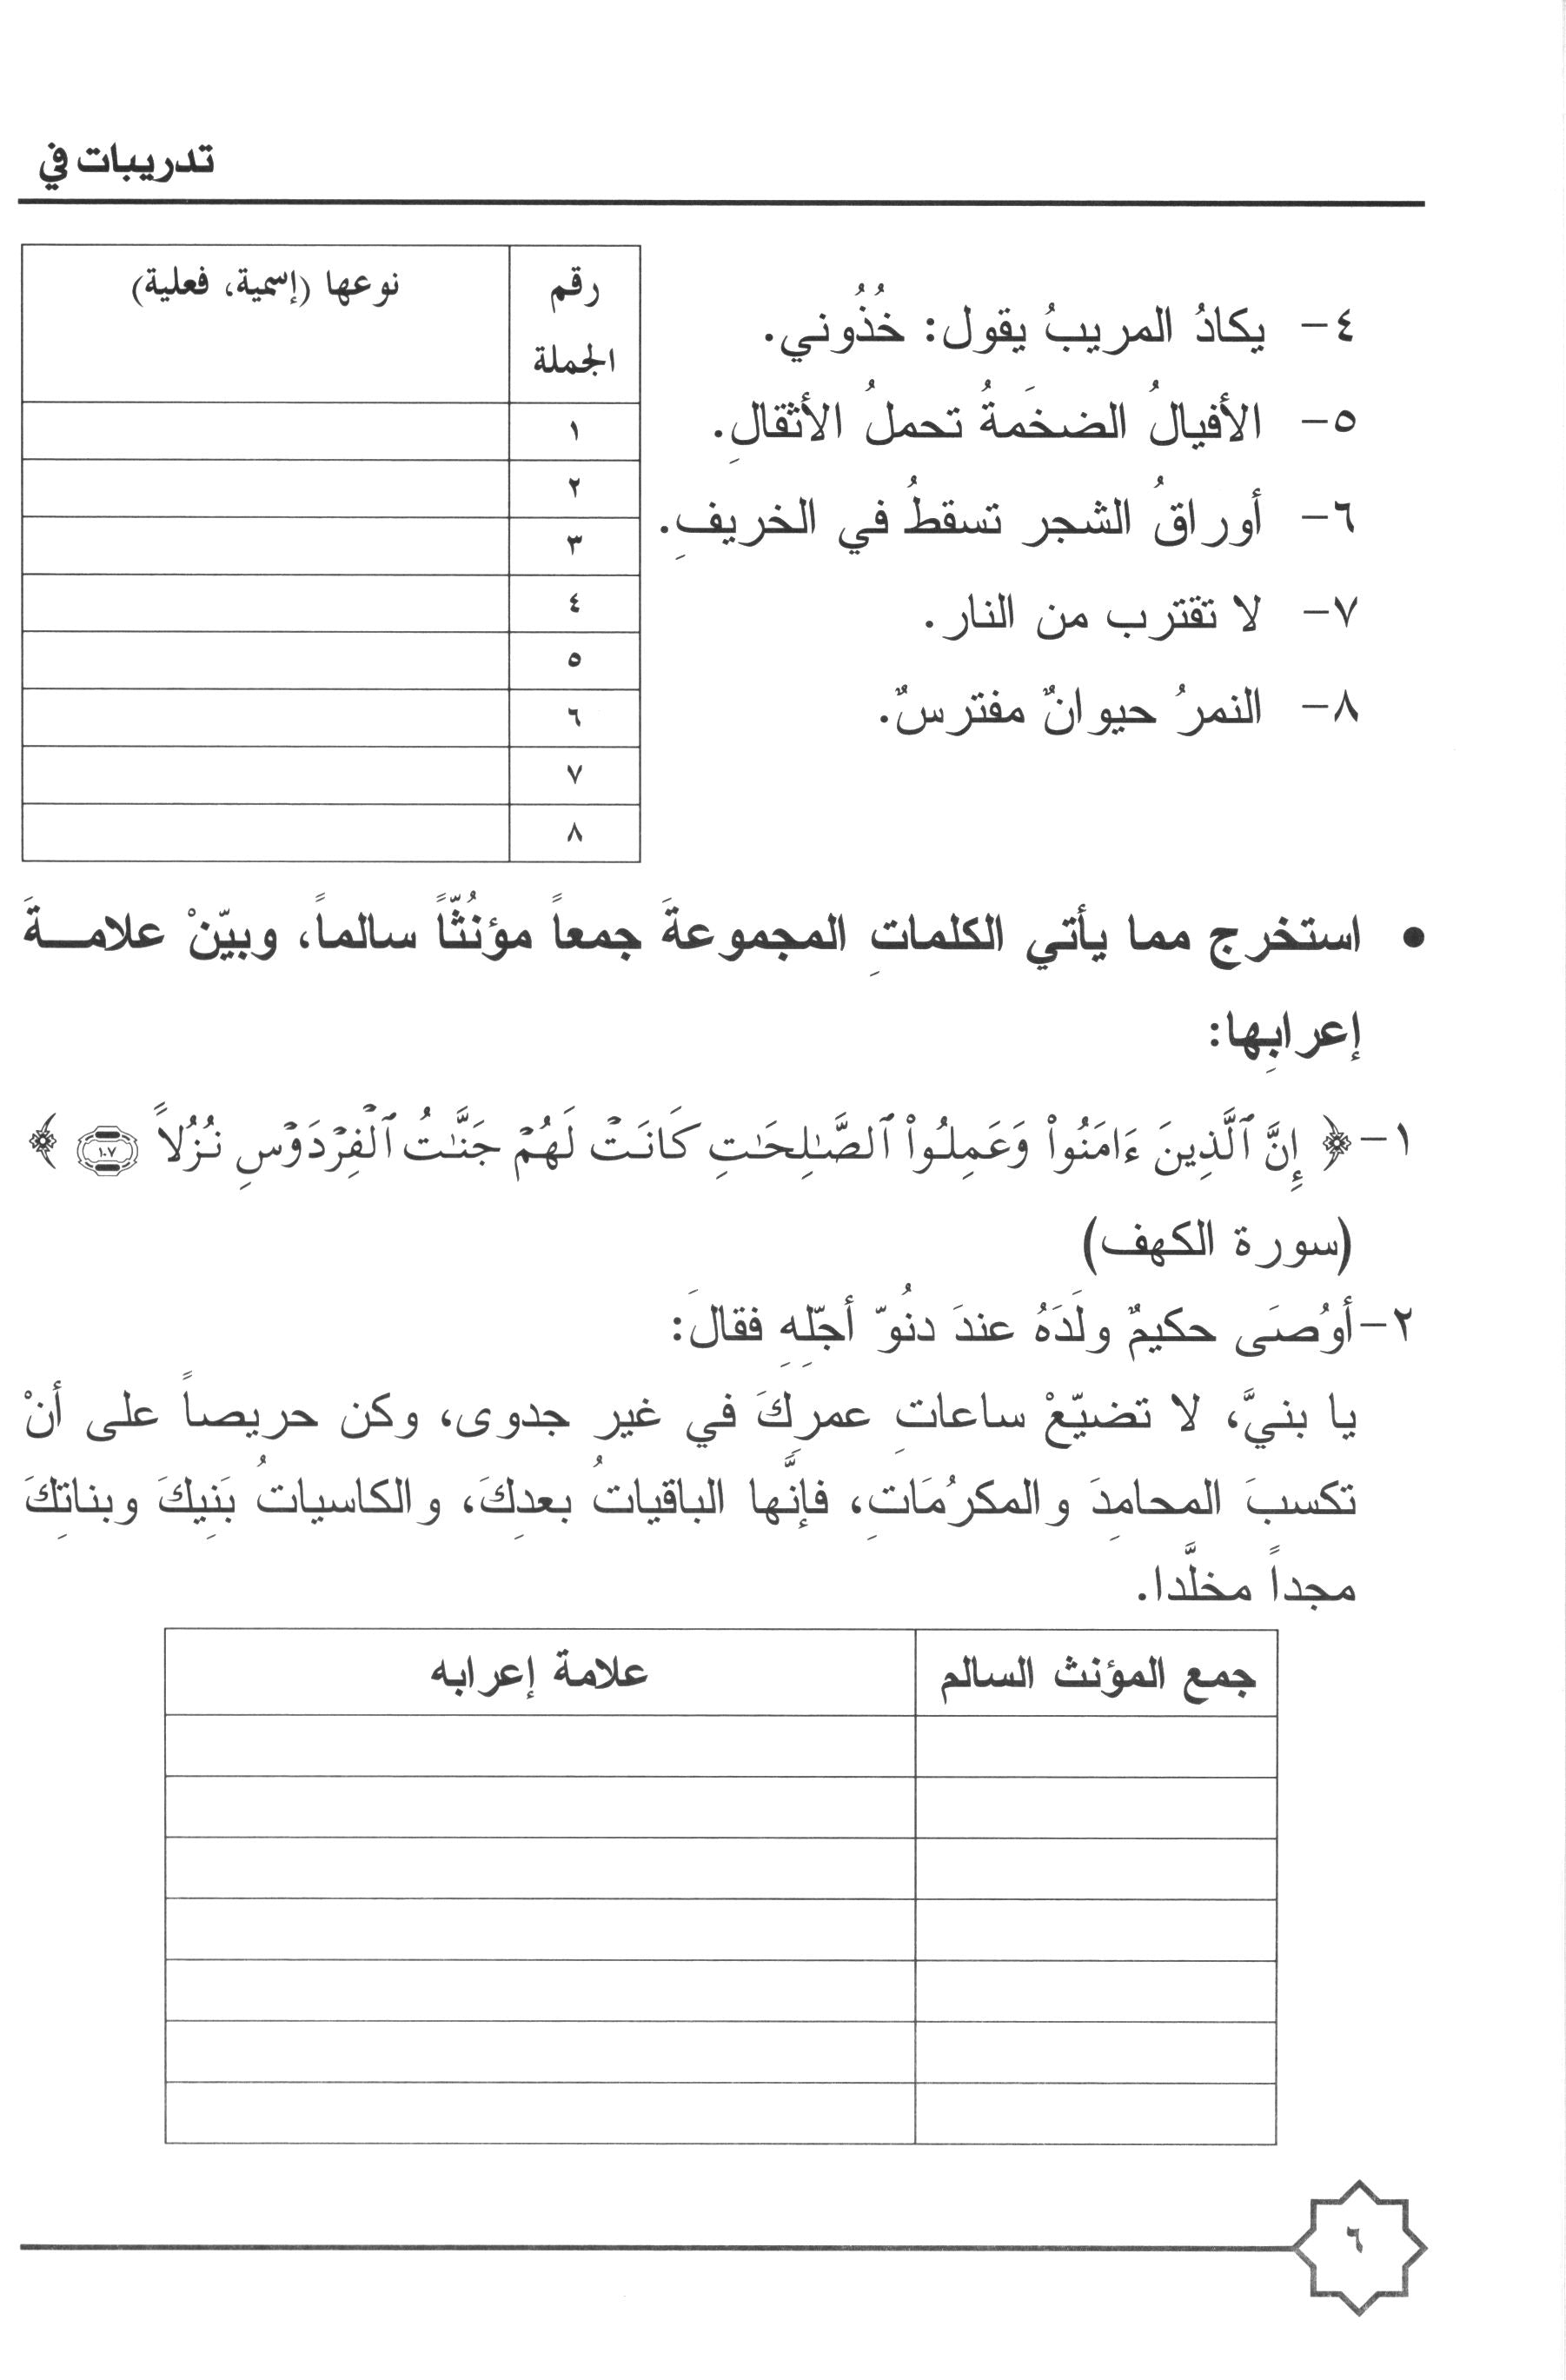 Al-Rowad Arabic Grammar Level 4 Part 1 تدريبات في قواعد اللّغة العربيّة